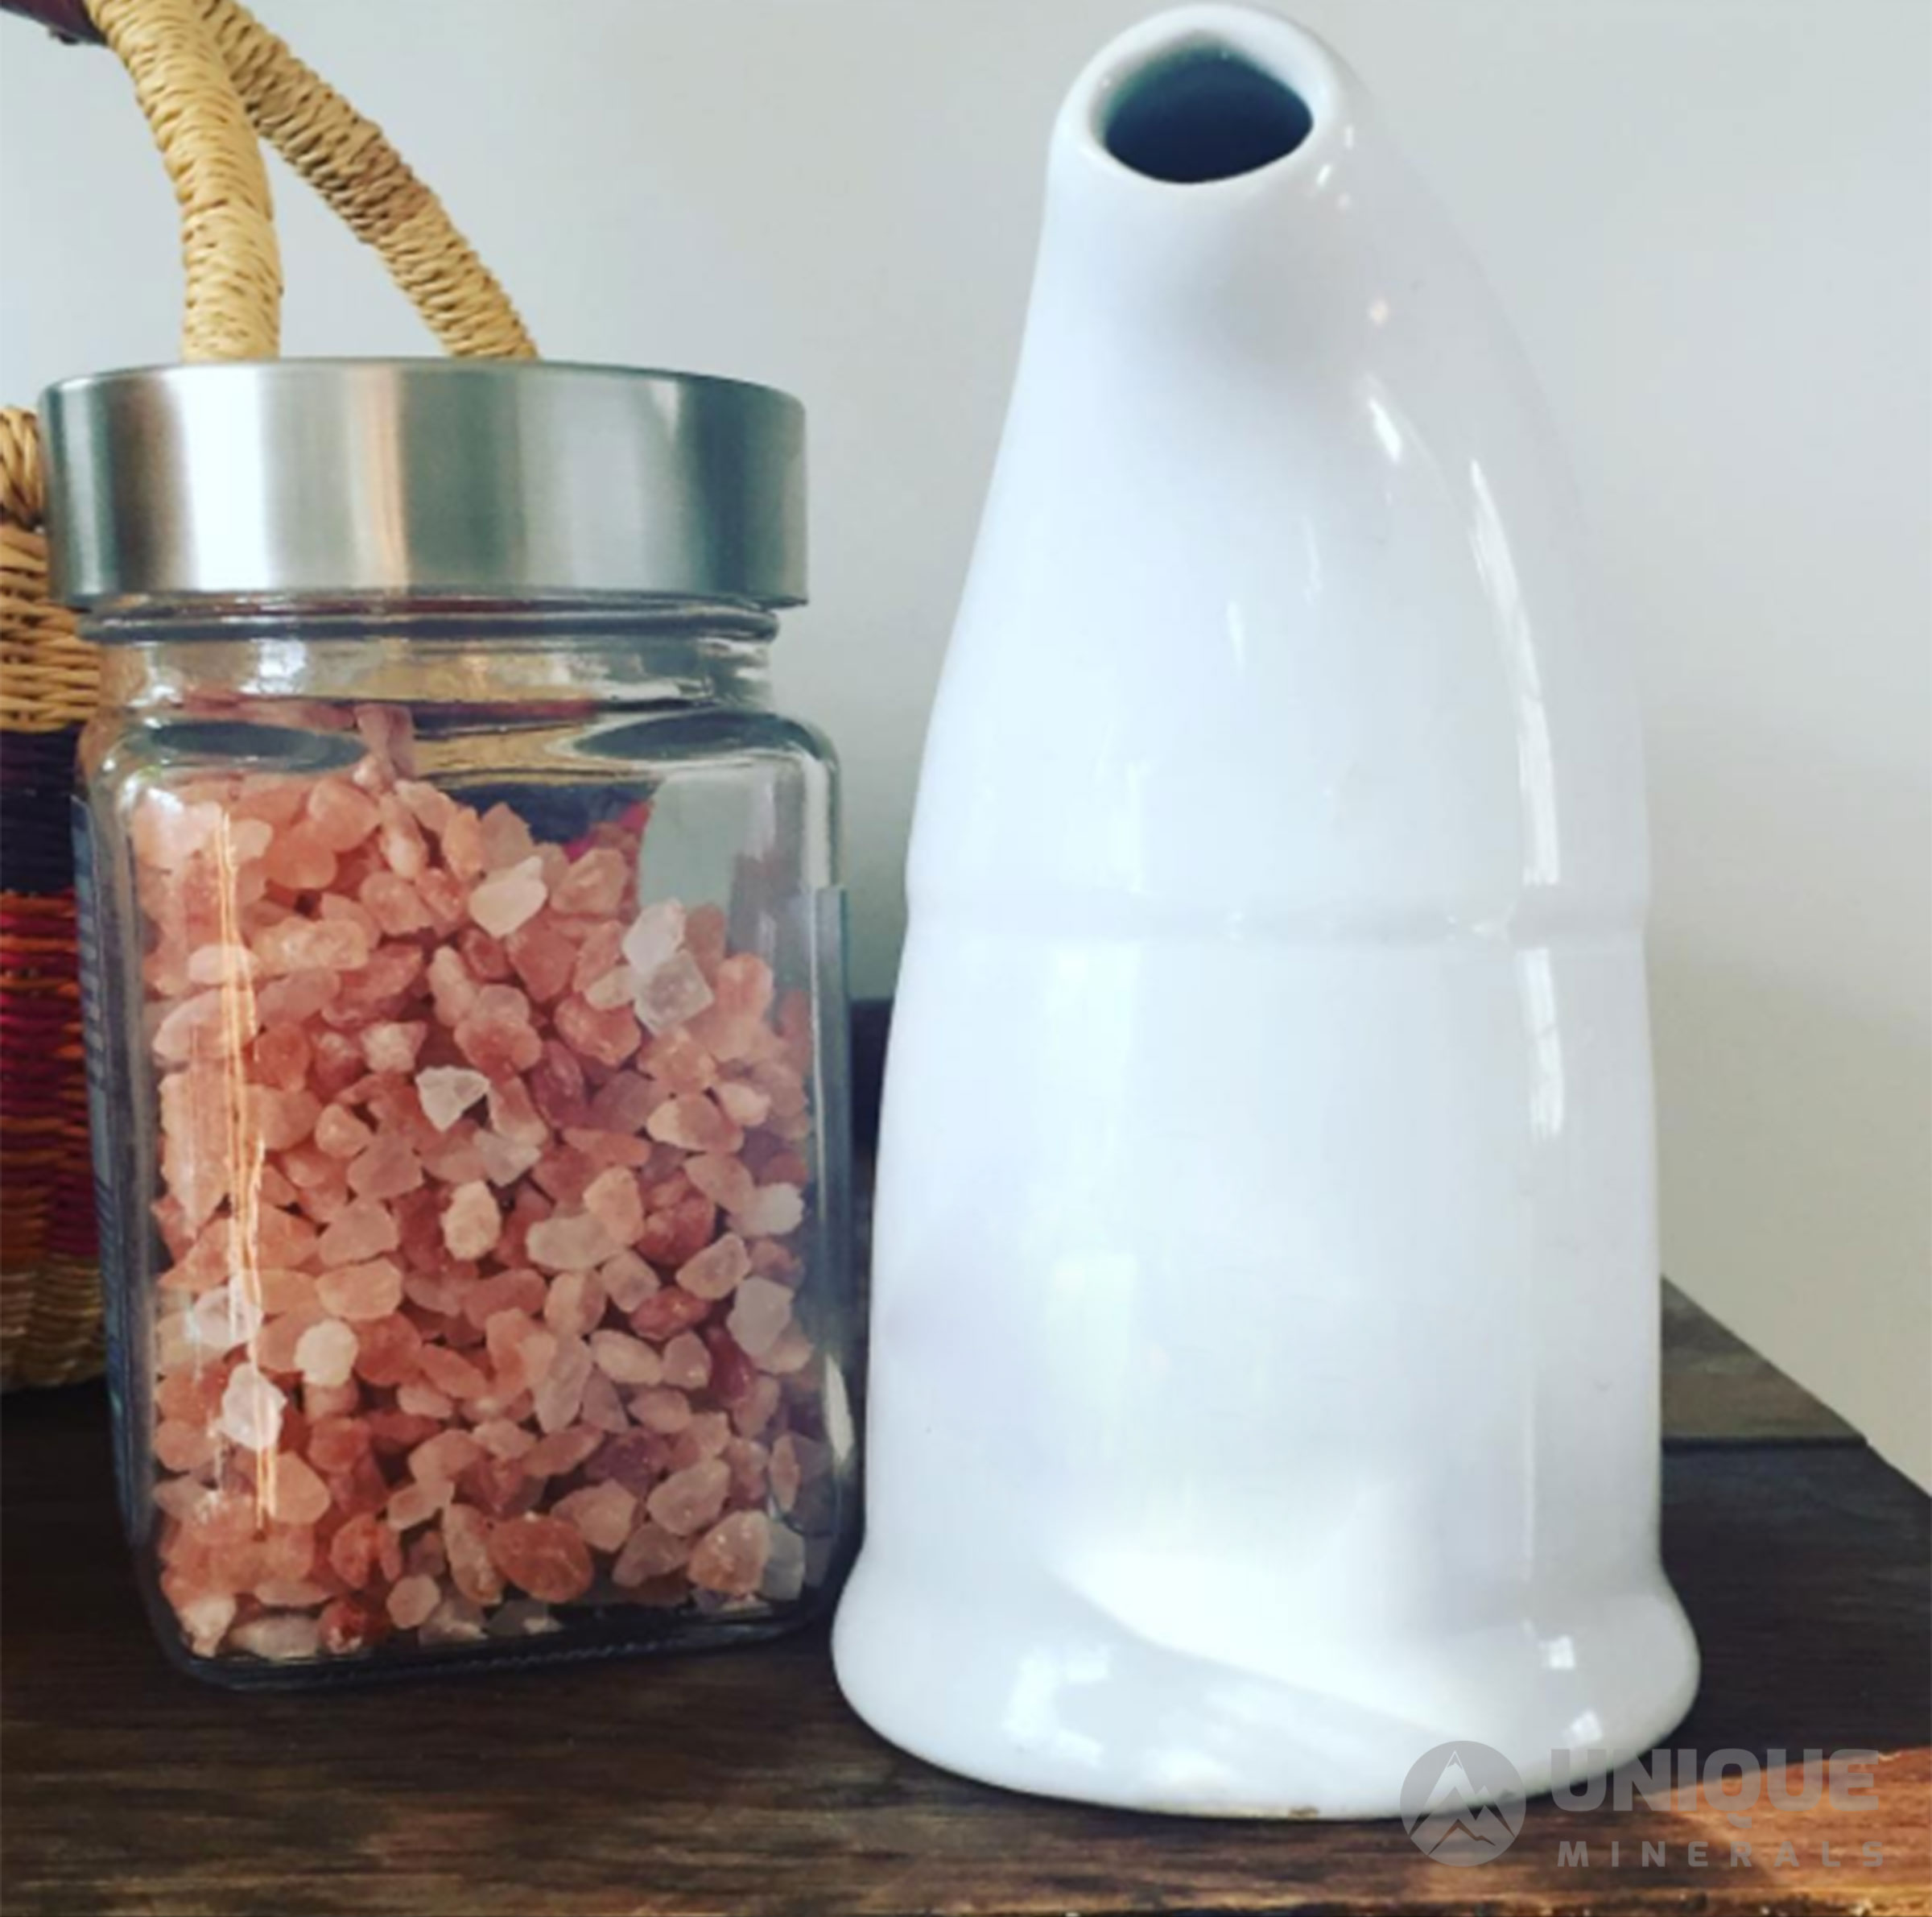 Salt Inhaler with Salt Jar, Himalayan Salt Lamp Exporters from Pakistan, Himalayan Salt Lamp, Himalaya Salt Lamps, Himalaya Salt Lamp,